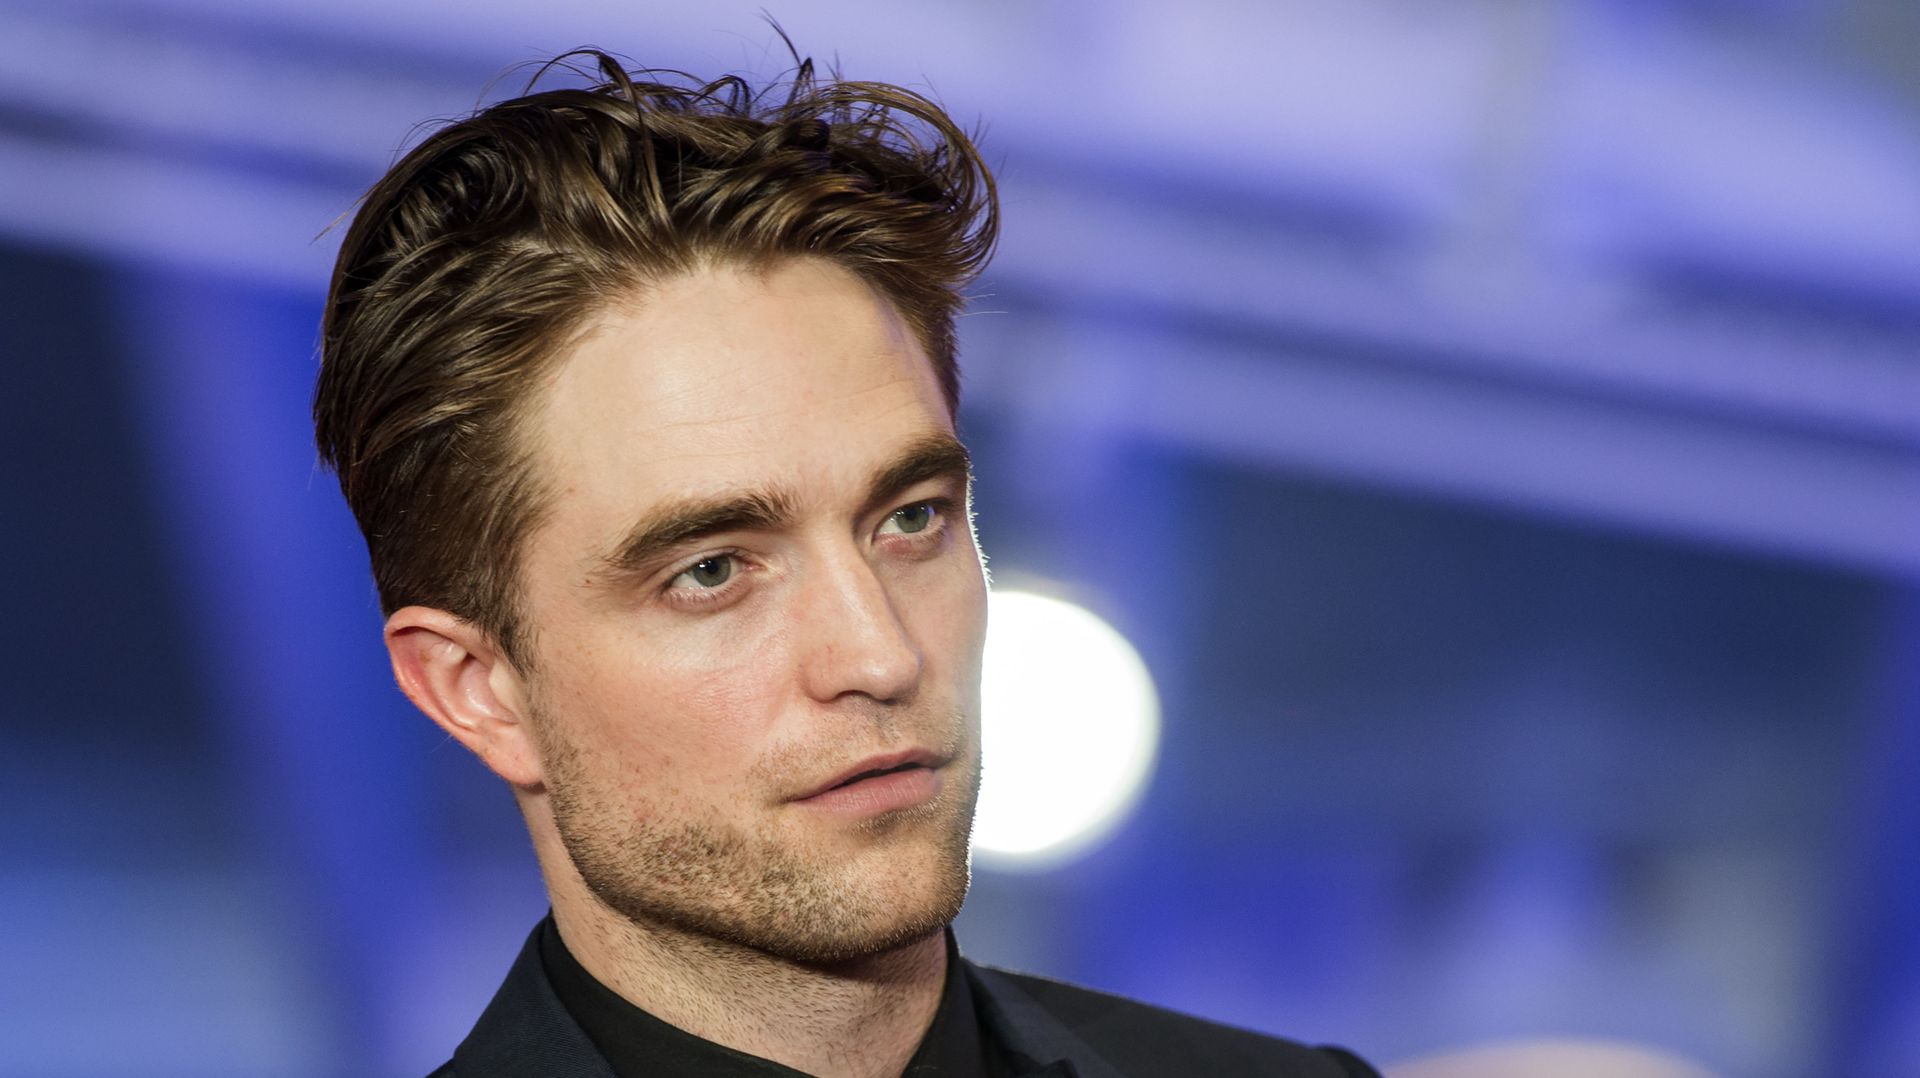 L'acteur britannique Robert Pattinson aurait contracté le nouveau coronavirus